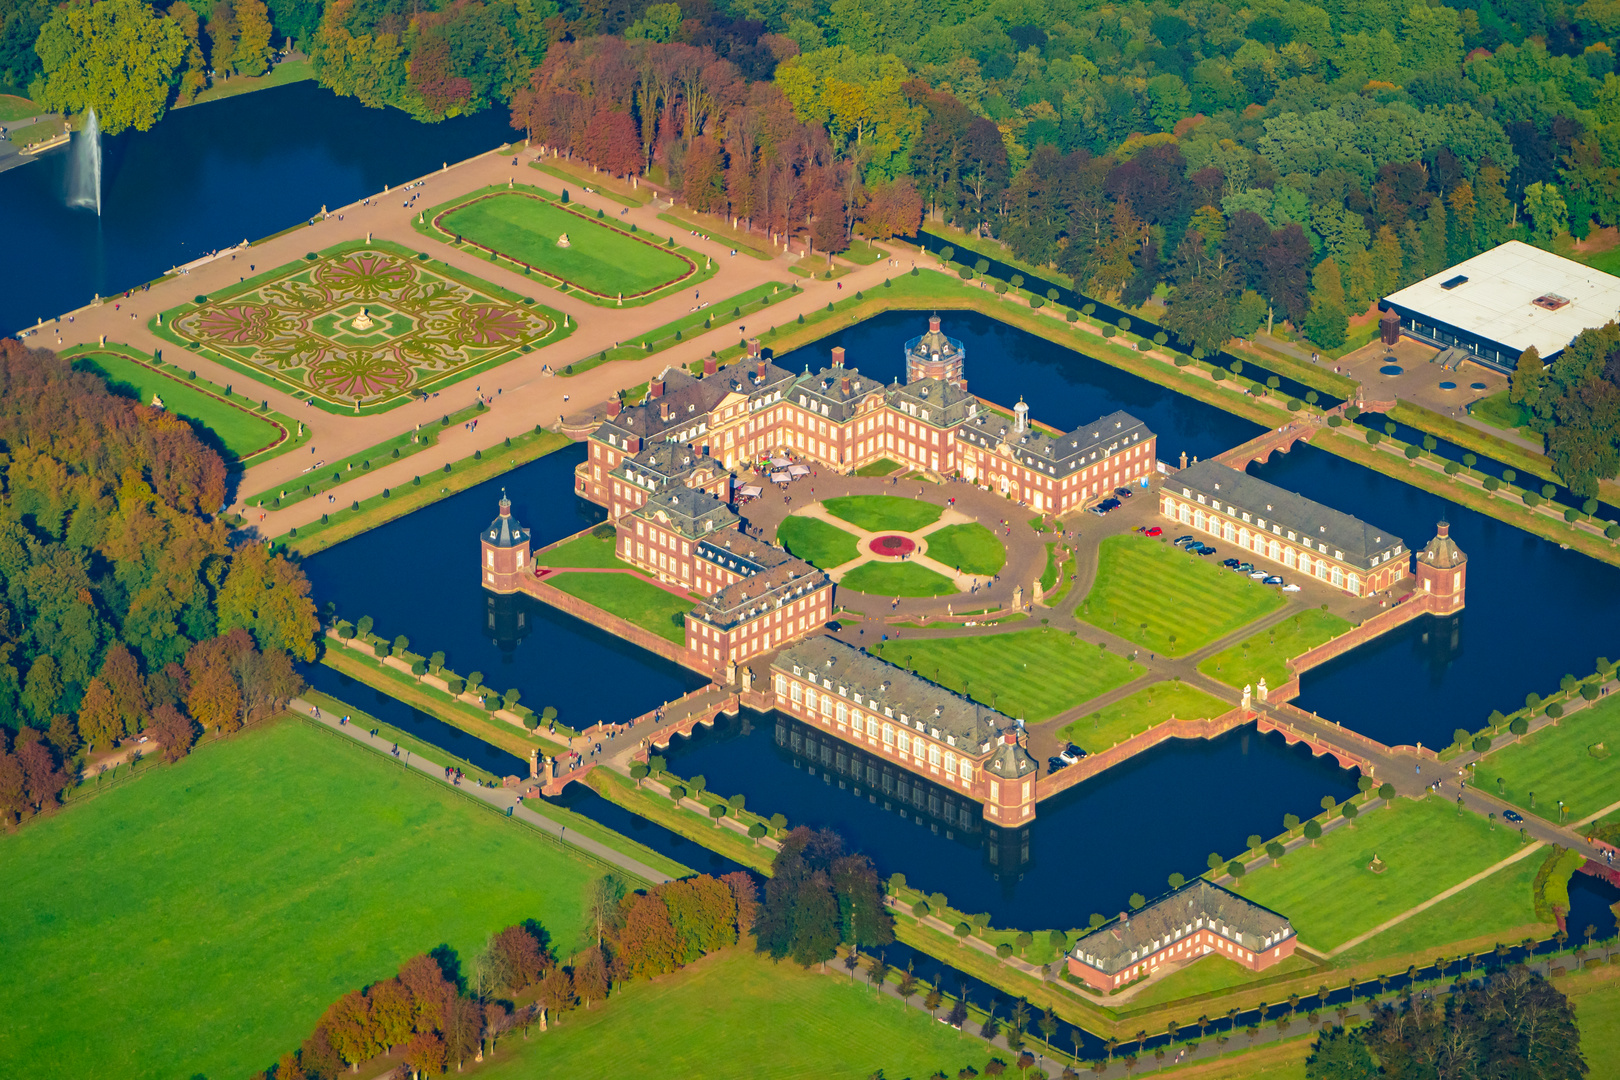 Luftbild vom Schloss Nordkirchen im Herbst